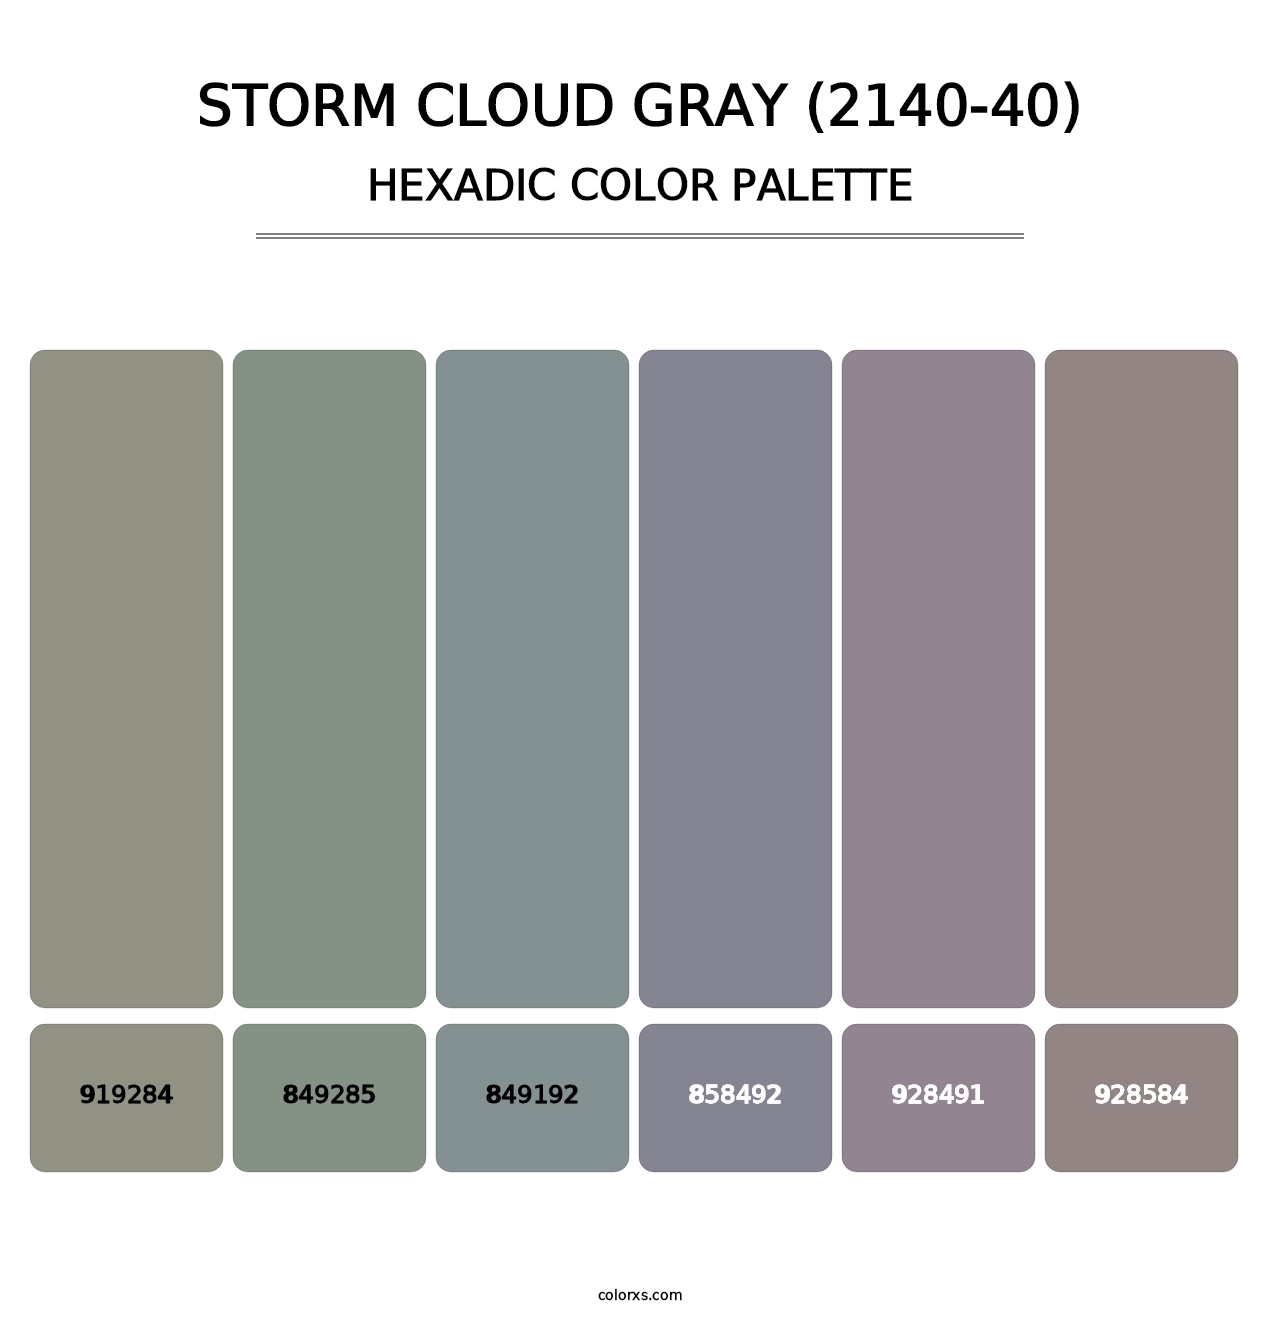 Storm Cloud Gray (2140-40) - Hexadic Color Palette